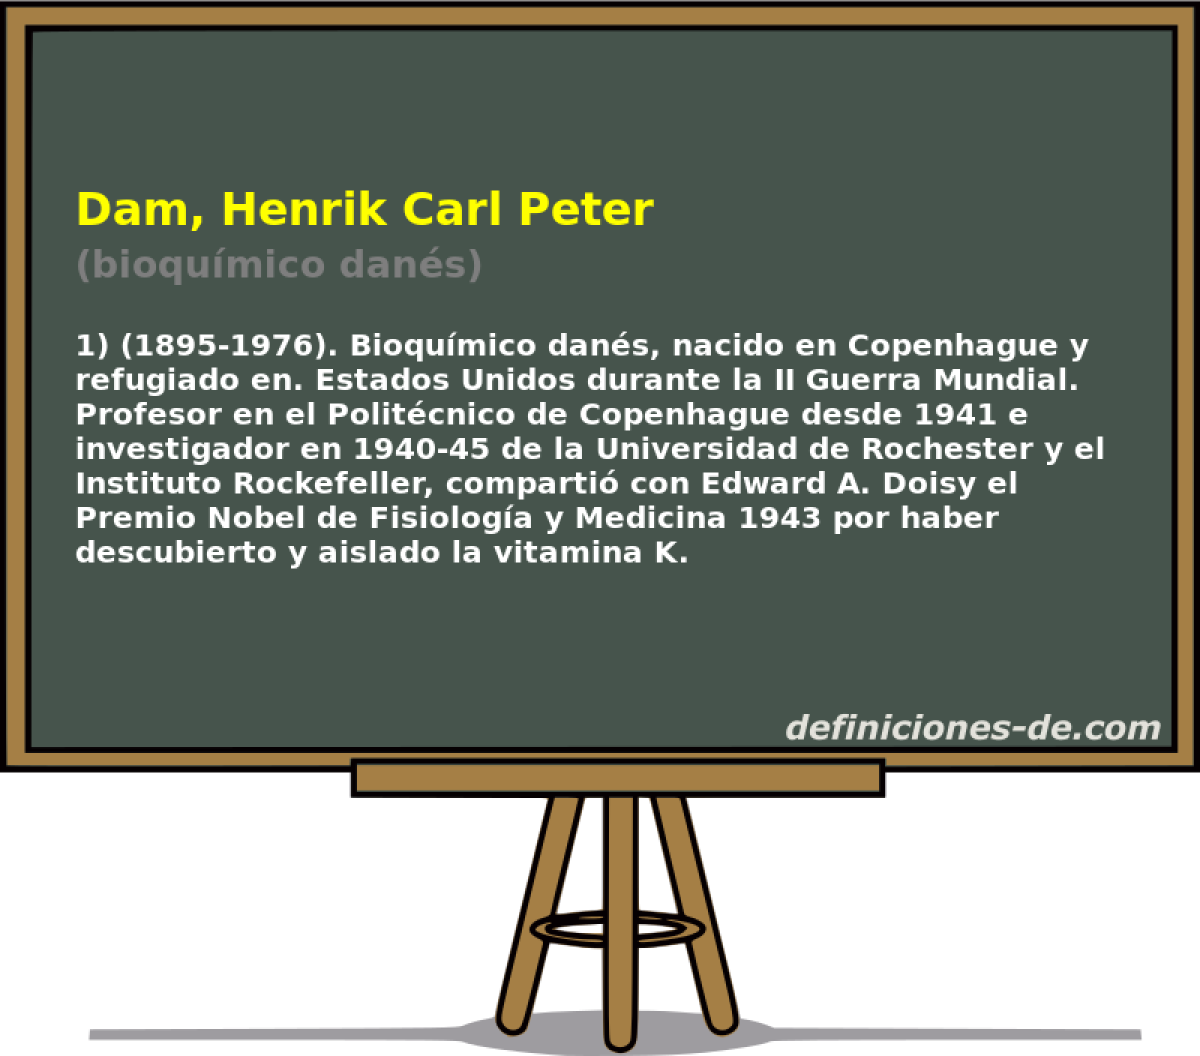 Dam, Henrik Carl Peter (bioqumico dans)